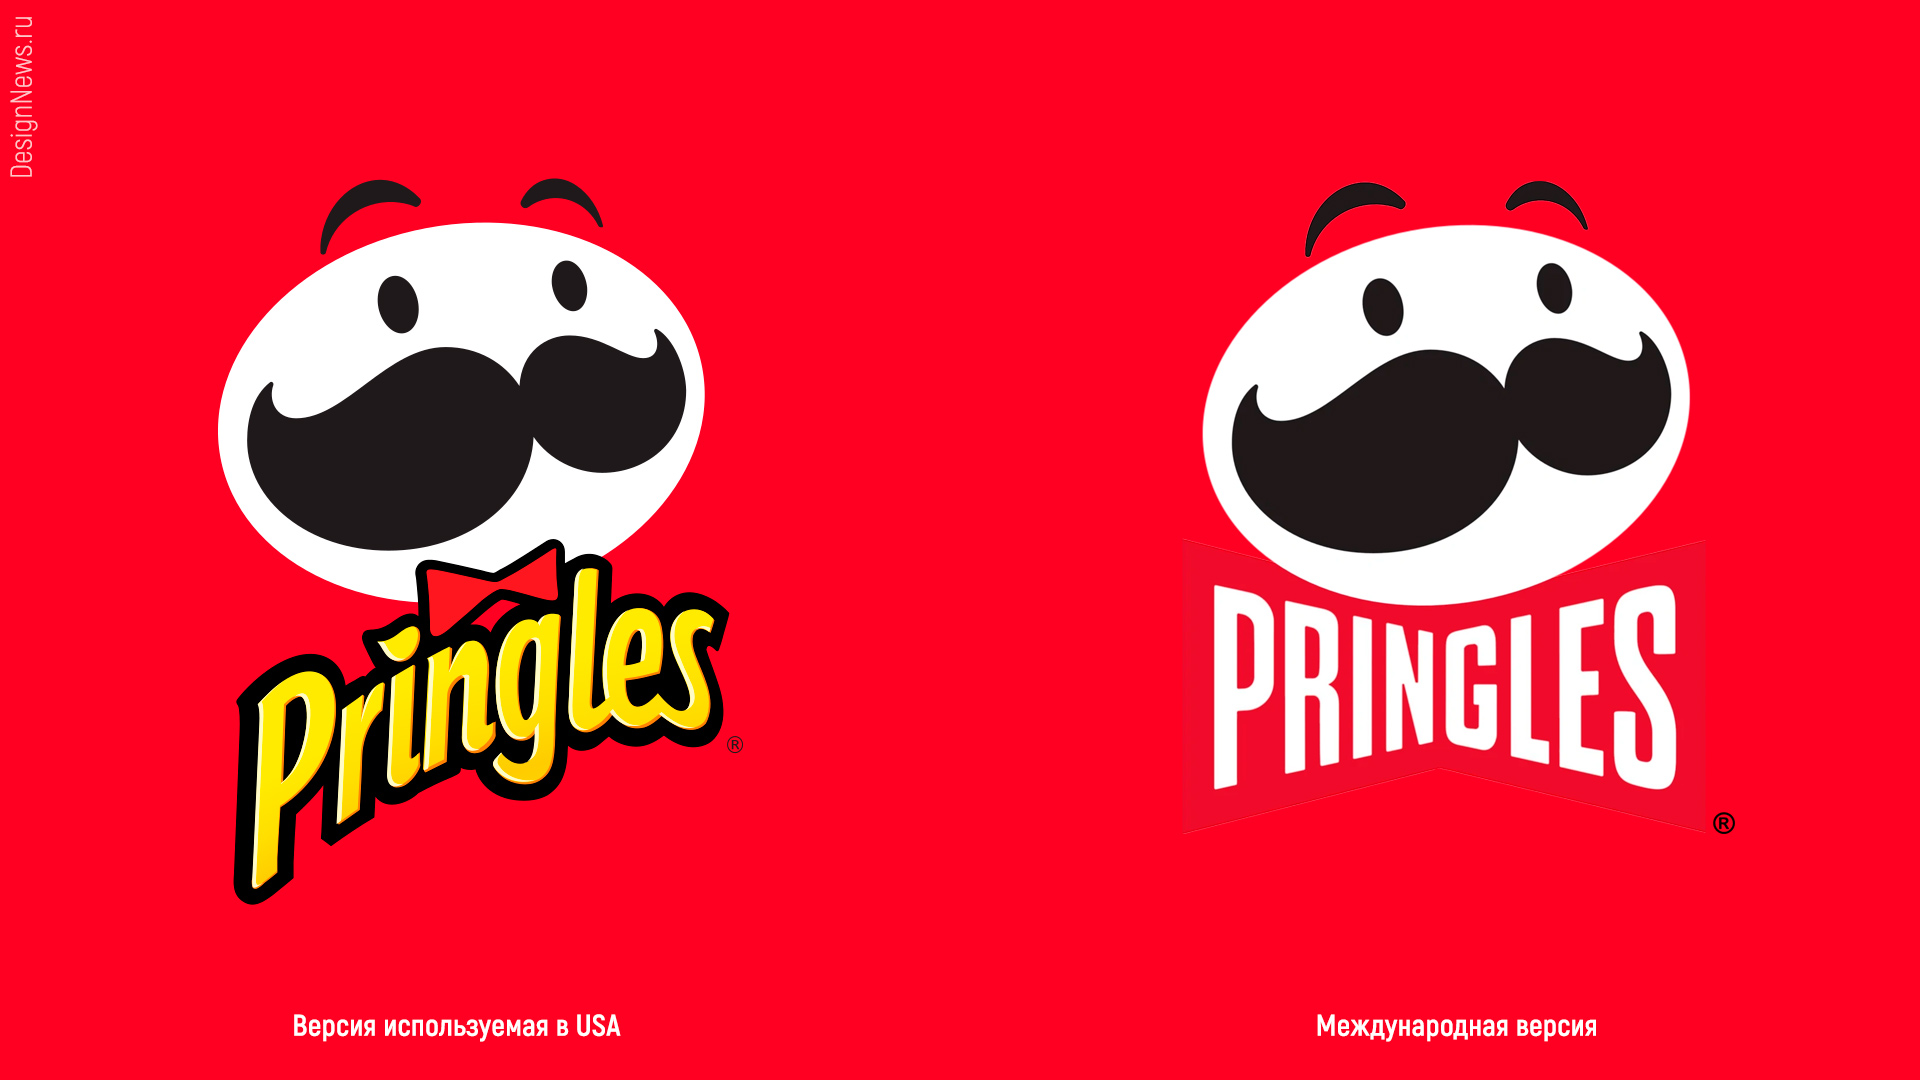 Обновление логотипа бренда Pringles